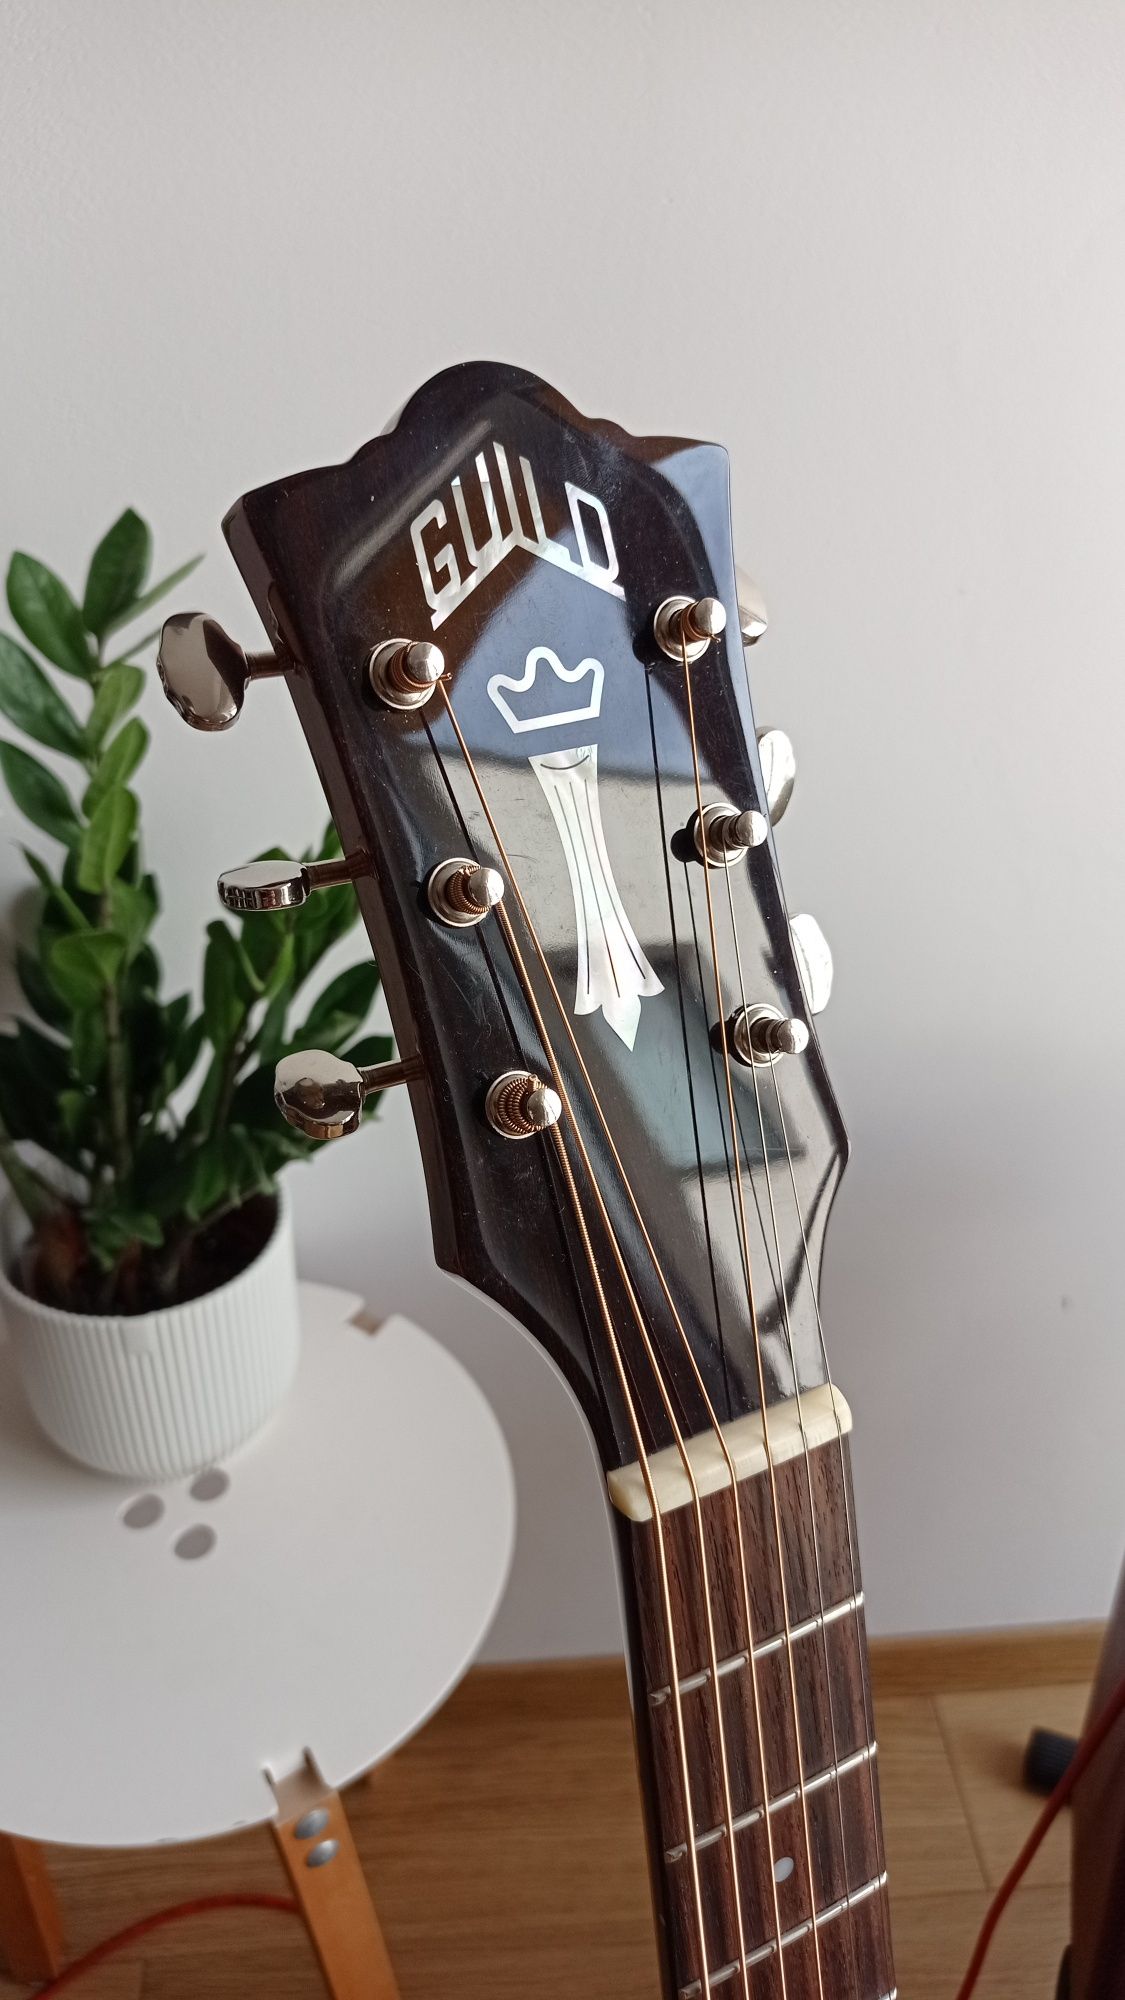 Gitara Guild M-120 lite drewno, pickup Martin, futerał, pro setup